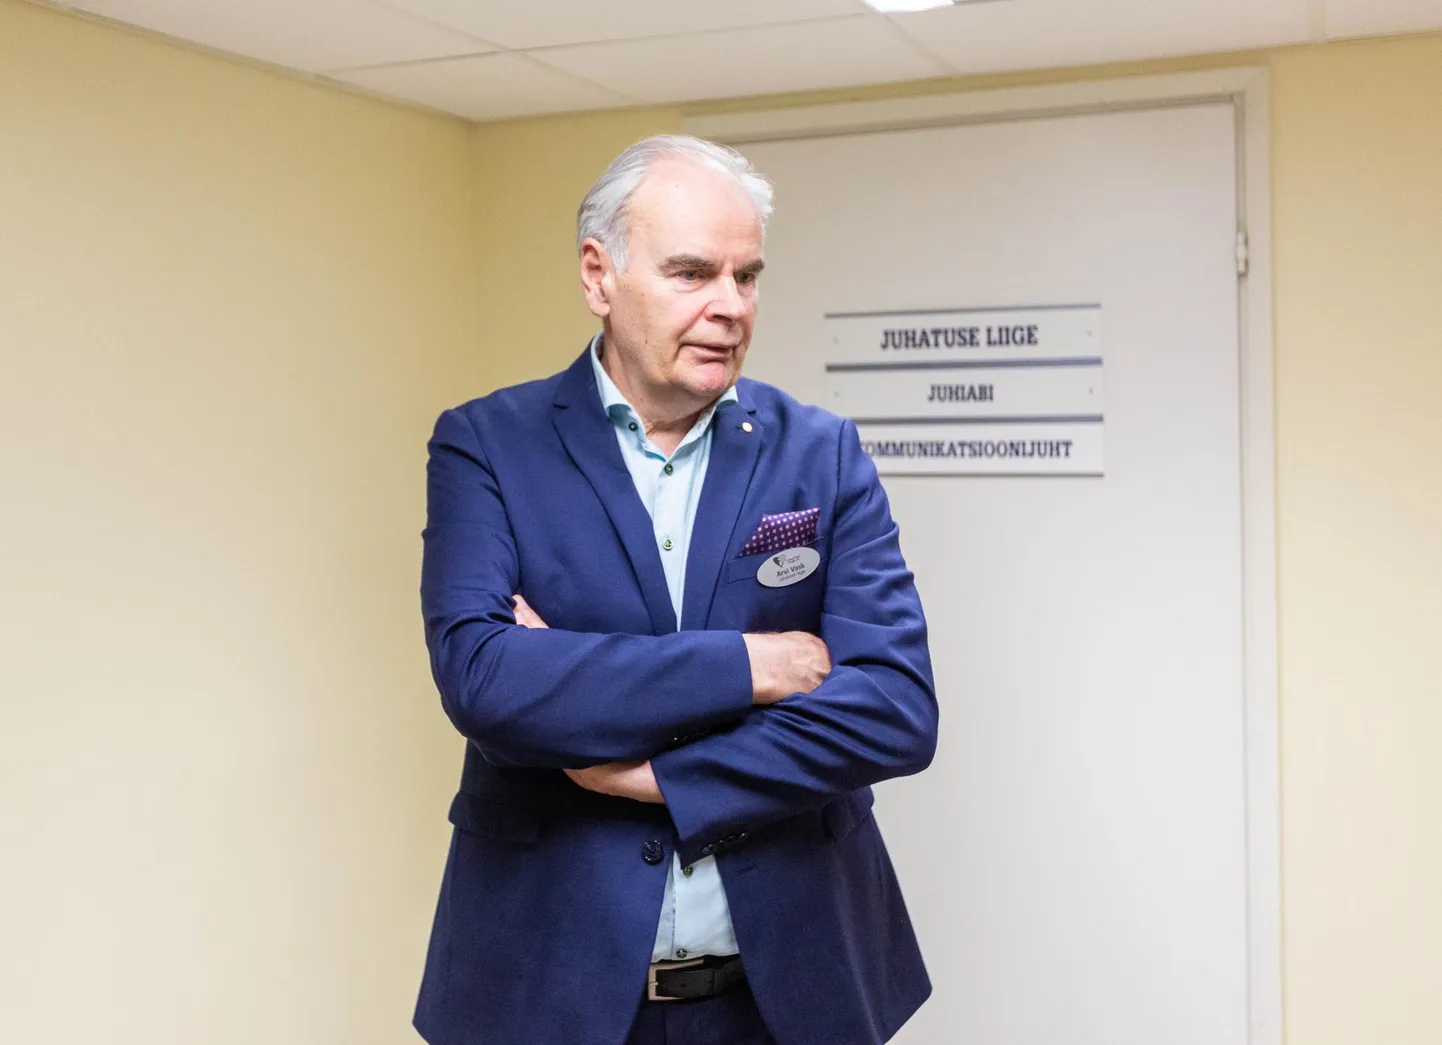 Lõuna-Eesti haigla juhatuse liige Arvi Vask ütles, et seoses kõrgete elektriarvetega läheb haigla eelarve pingeliseks.